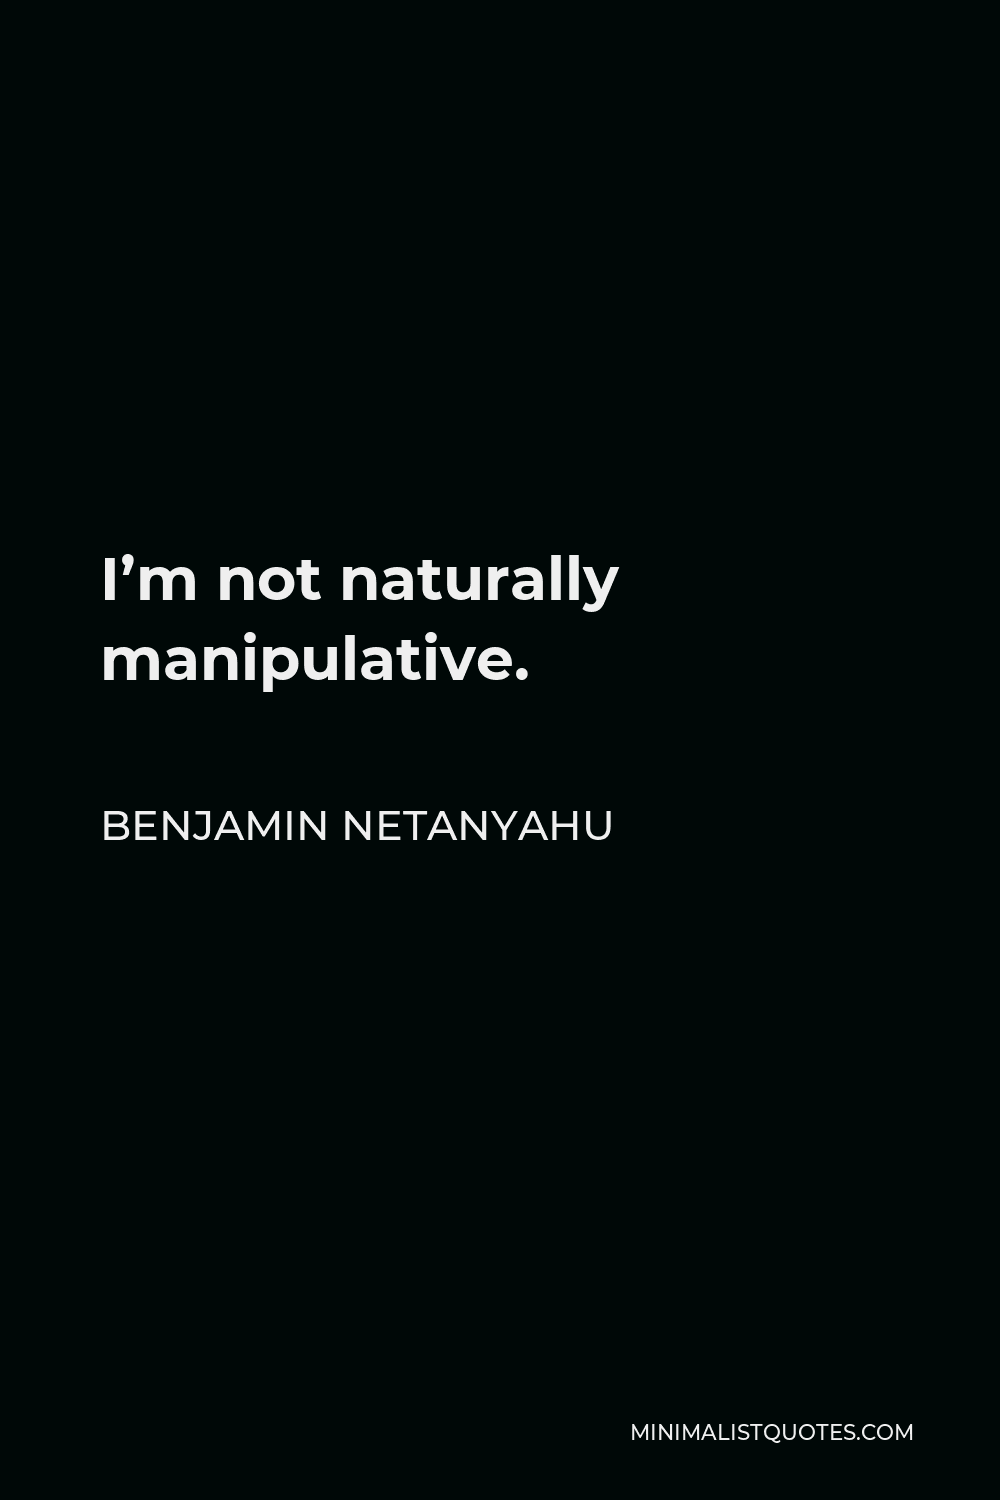 Benjamin Netanyahu Quote - I’m not naturally manipulative.